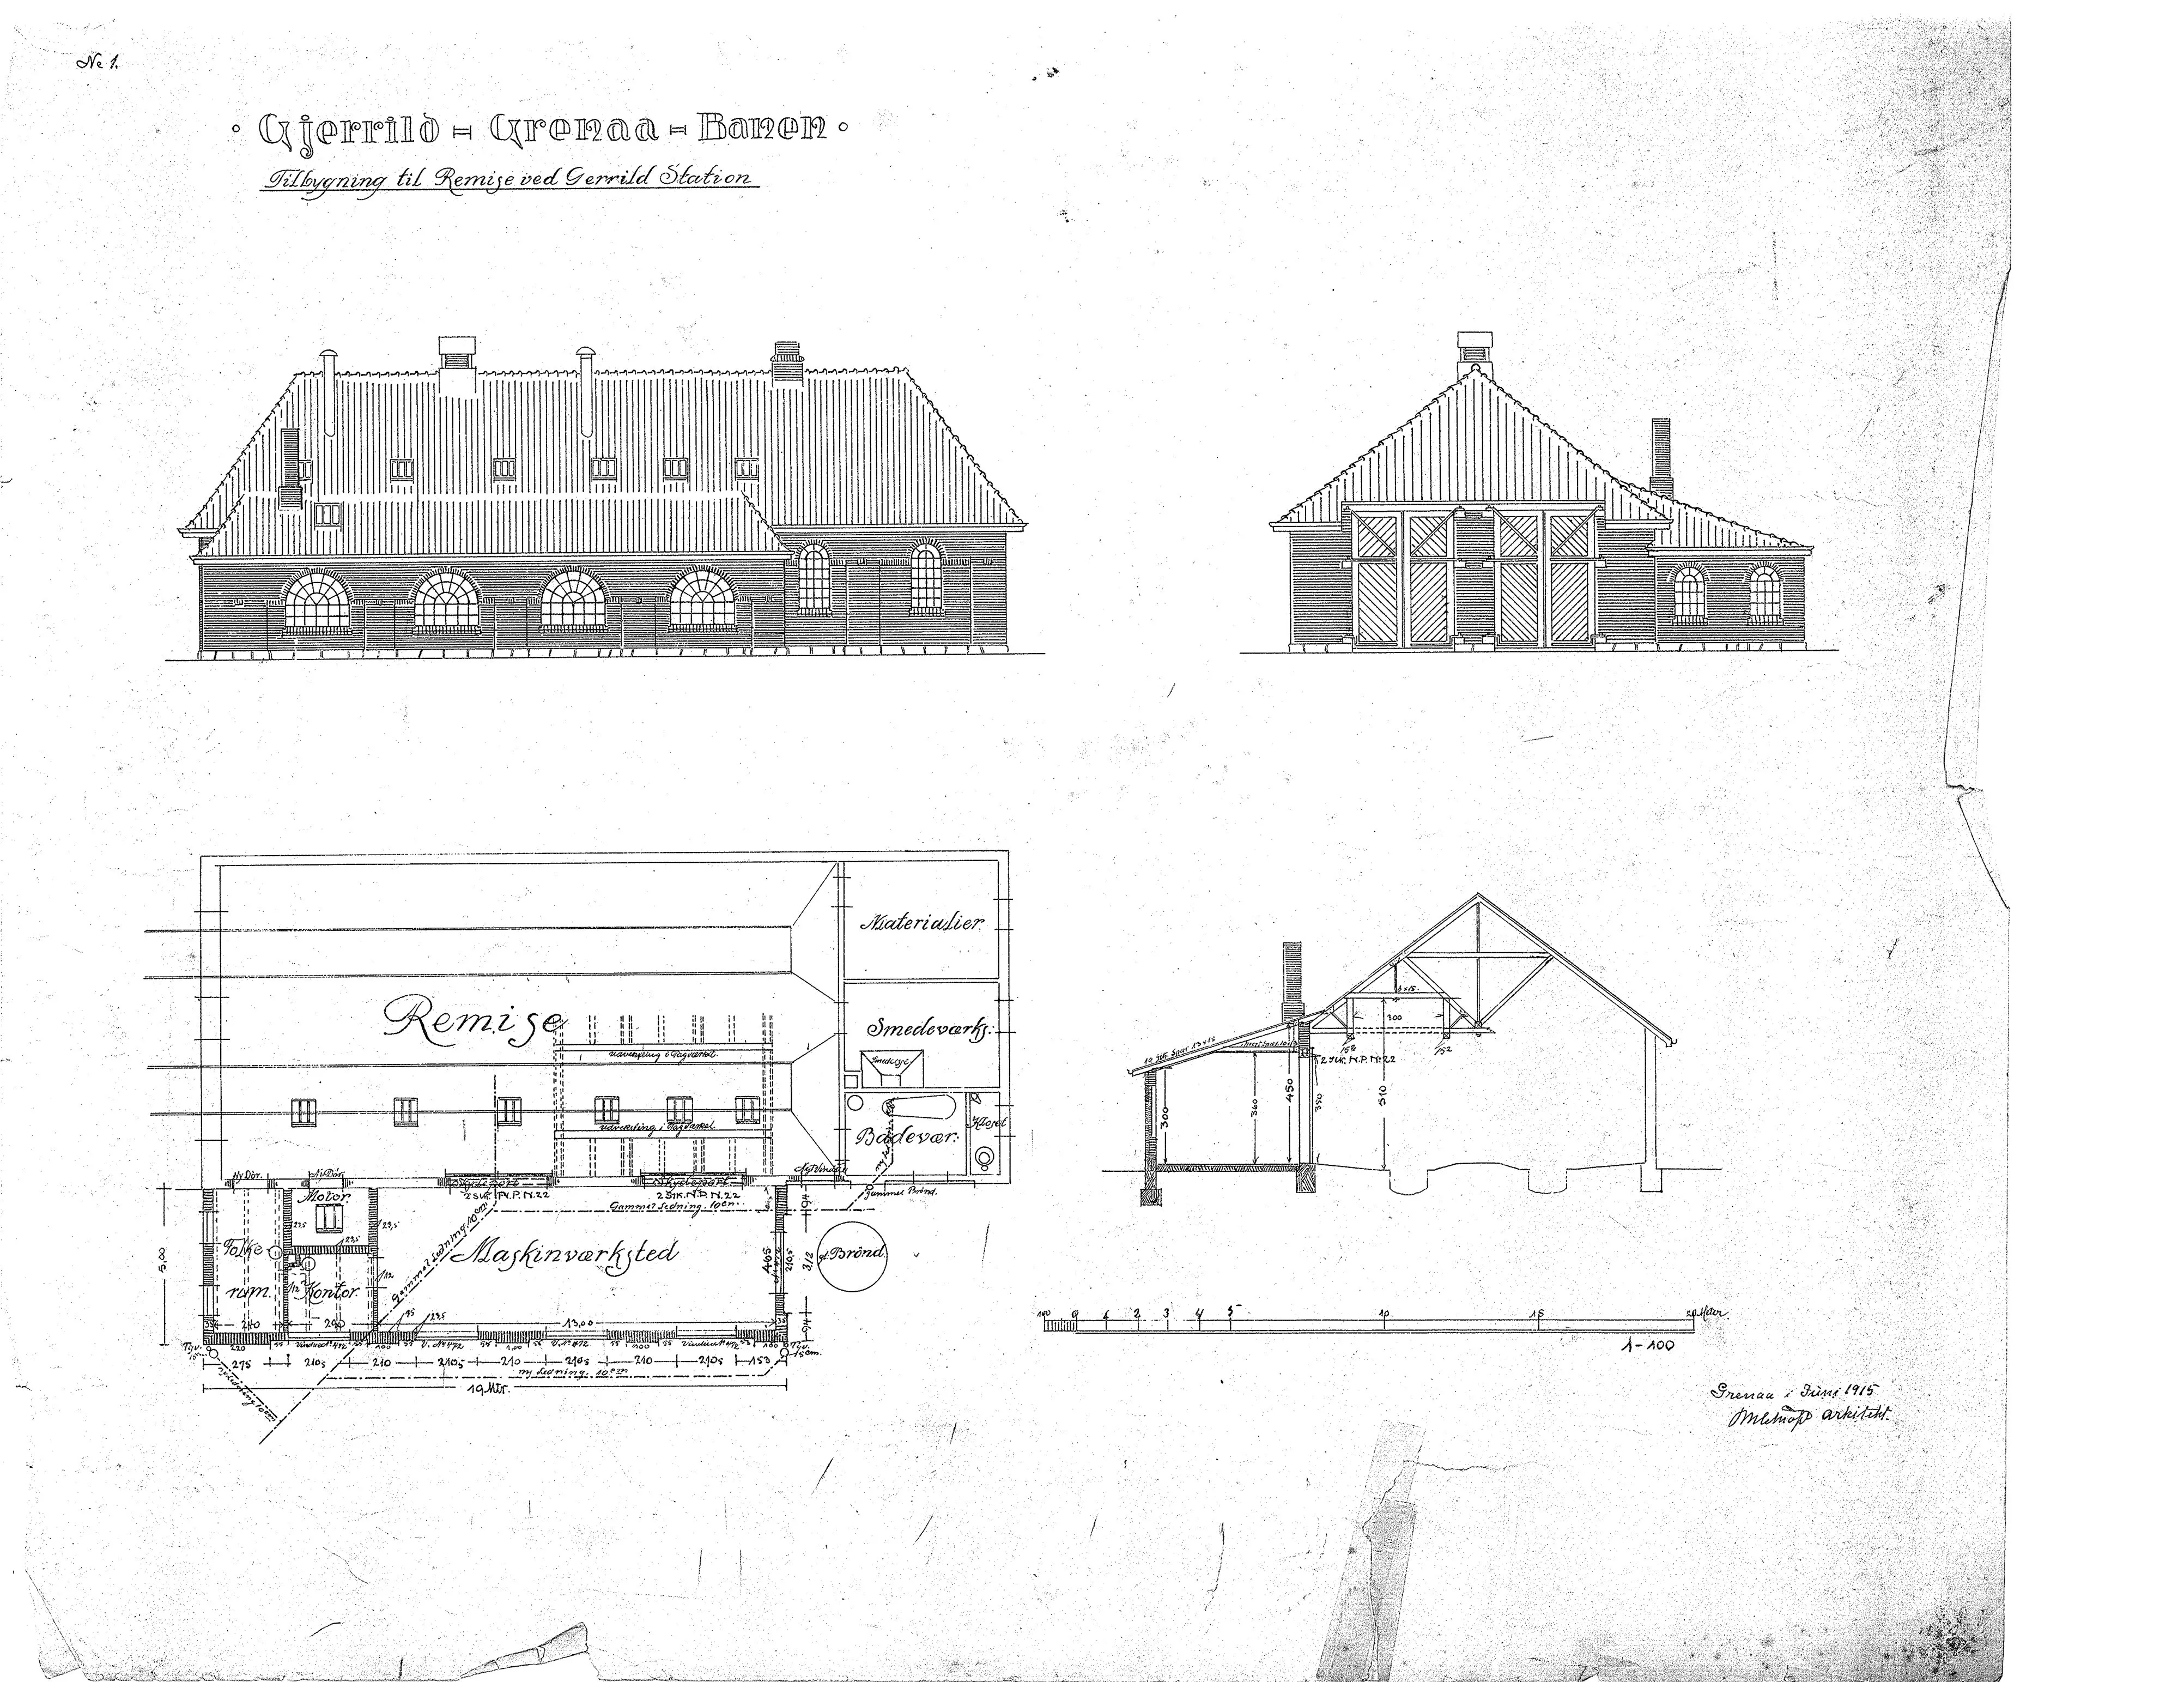 Tegning af Tilbygning til remise ved Gjerrild Station.